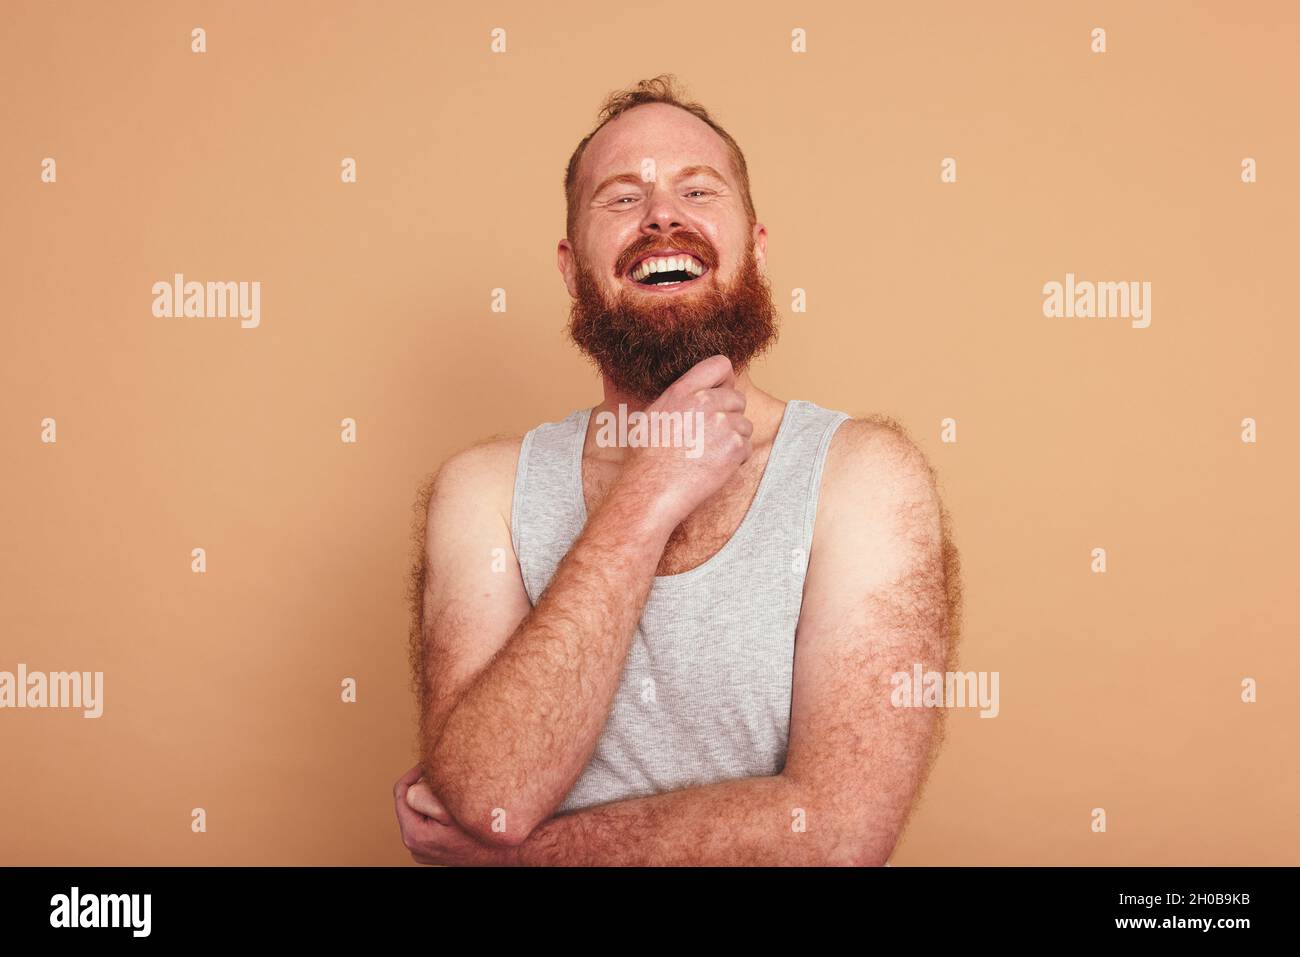 Fröhlicher Mann, der in einem Studio die Kamera anlächelt. Body positive junge Mann vor einem Studio Hintergrund stehen. Selbstbewusster junger Mann, der sich wohlfühlt Stockfoto